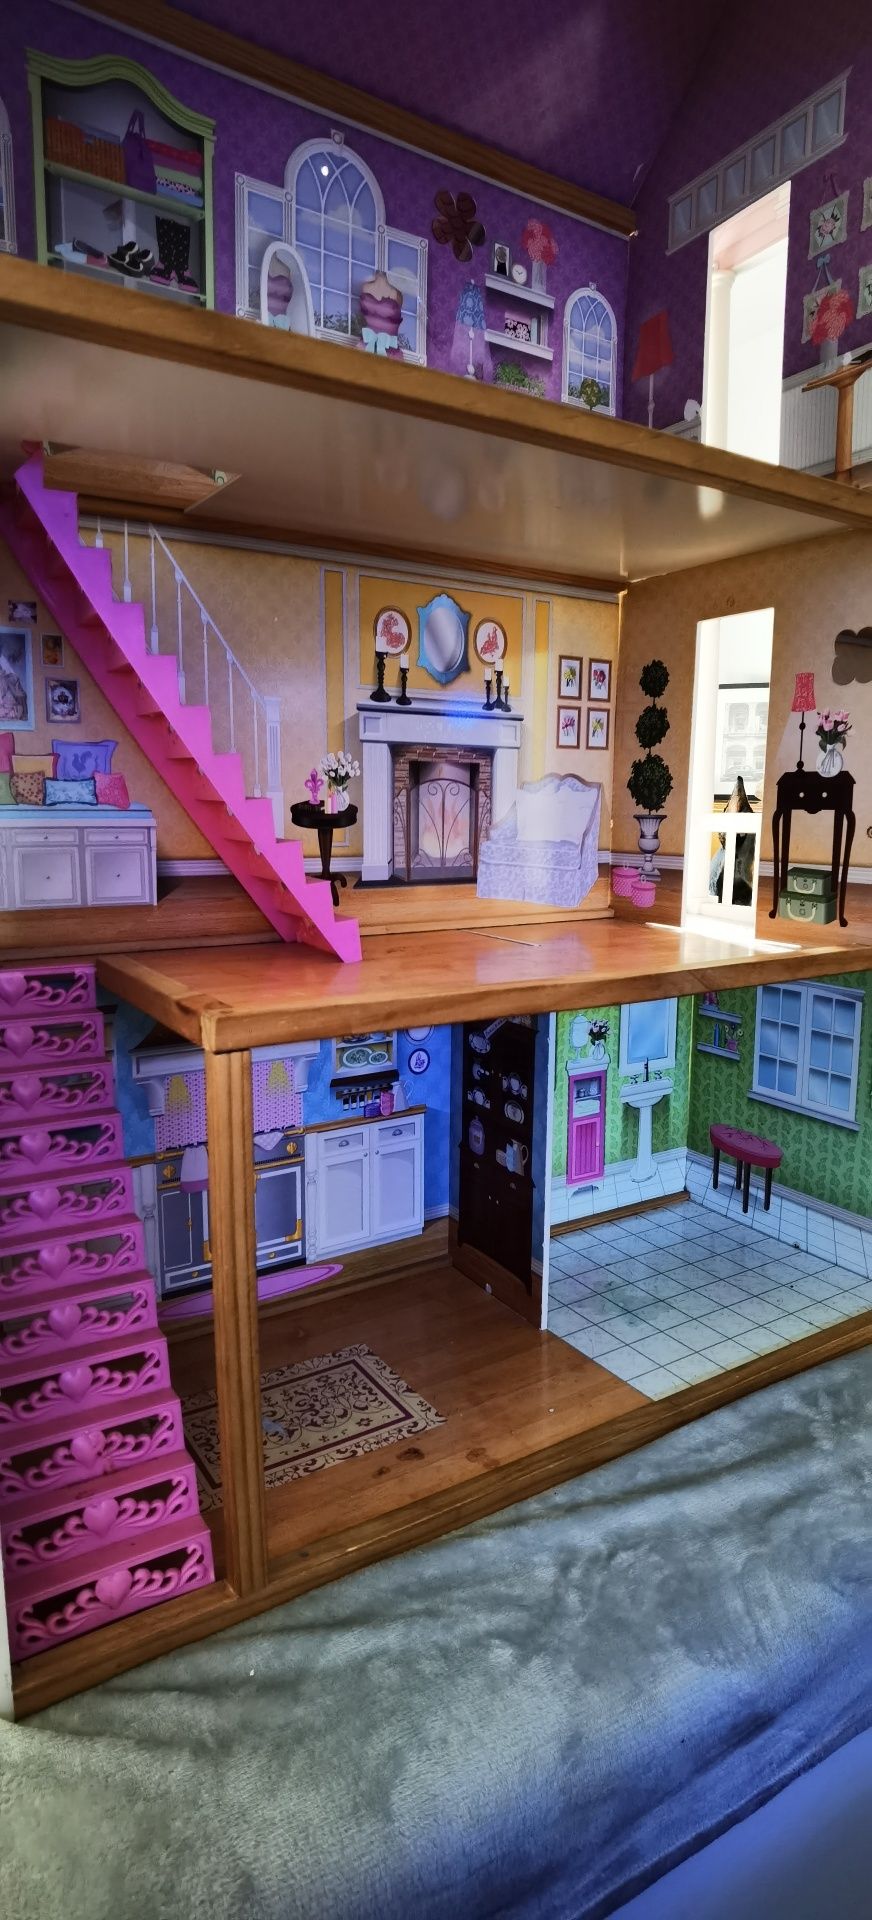 Dom domek dla lalek Barbie